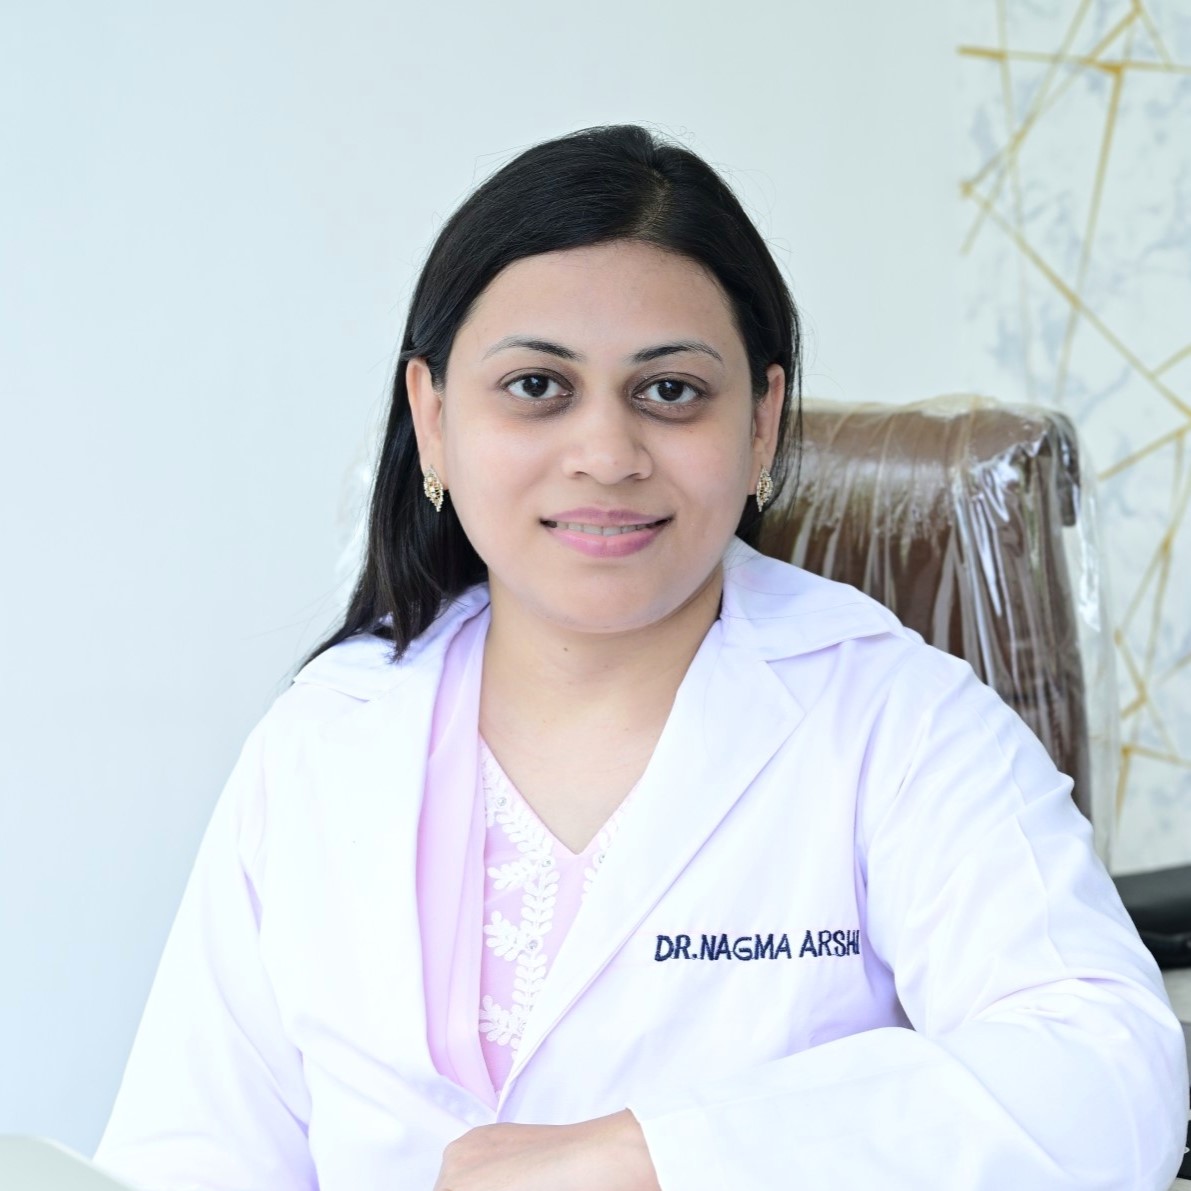 Dr. Nagma Arshi